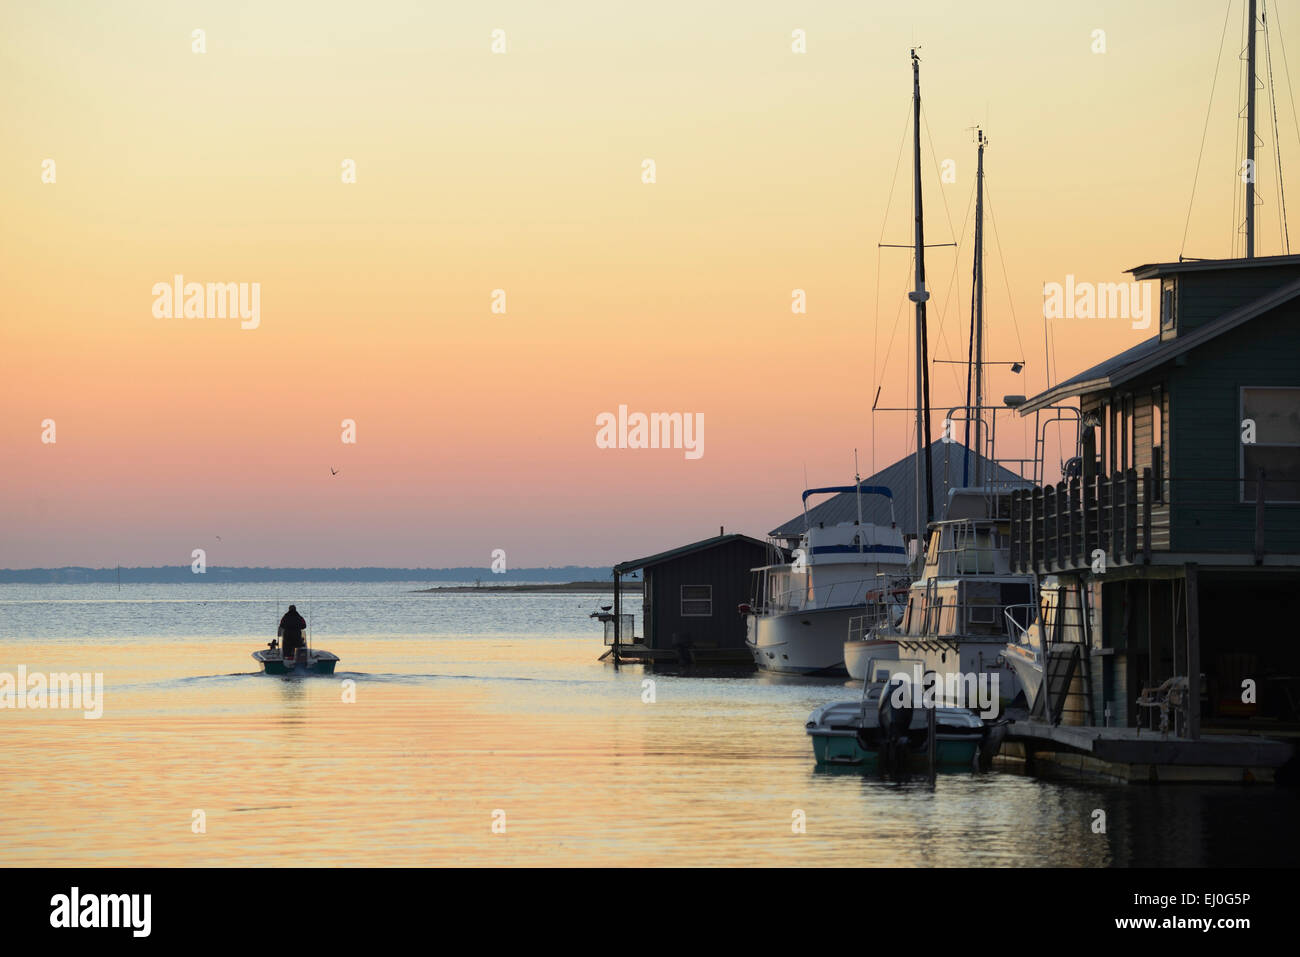 Stati Uniti d'America, Florida, contea di Franklin, Apalachicola, dock e barche lungo il fiume, Foto Stock